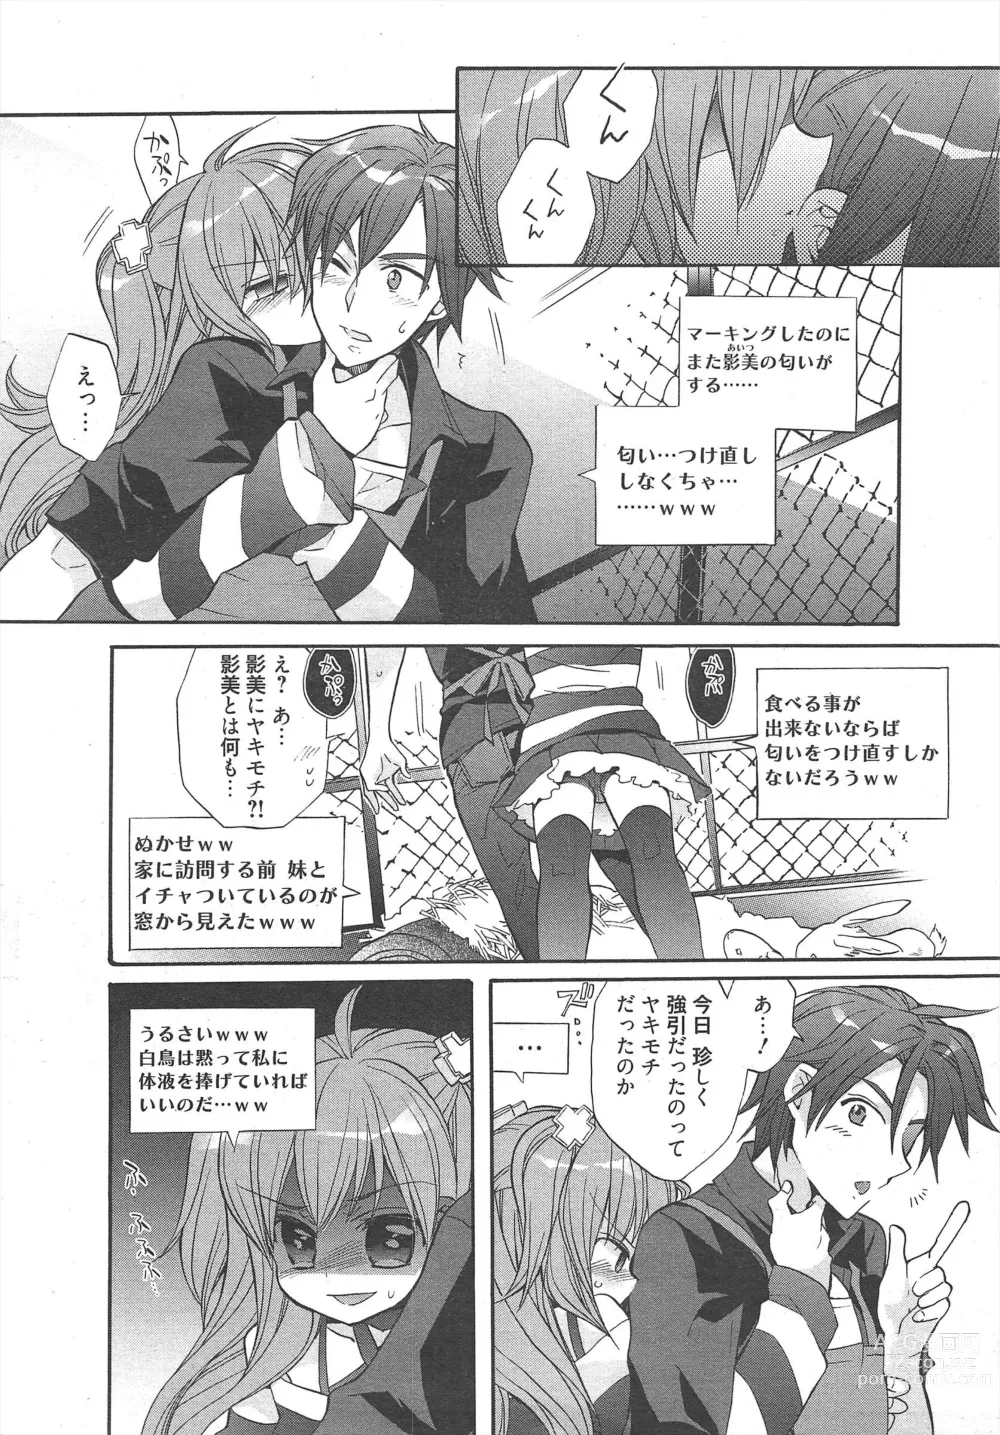 Page 14 of manga Manga Bangaichi 2011-12